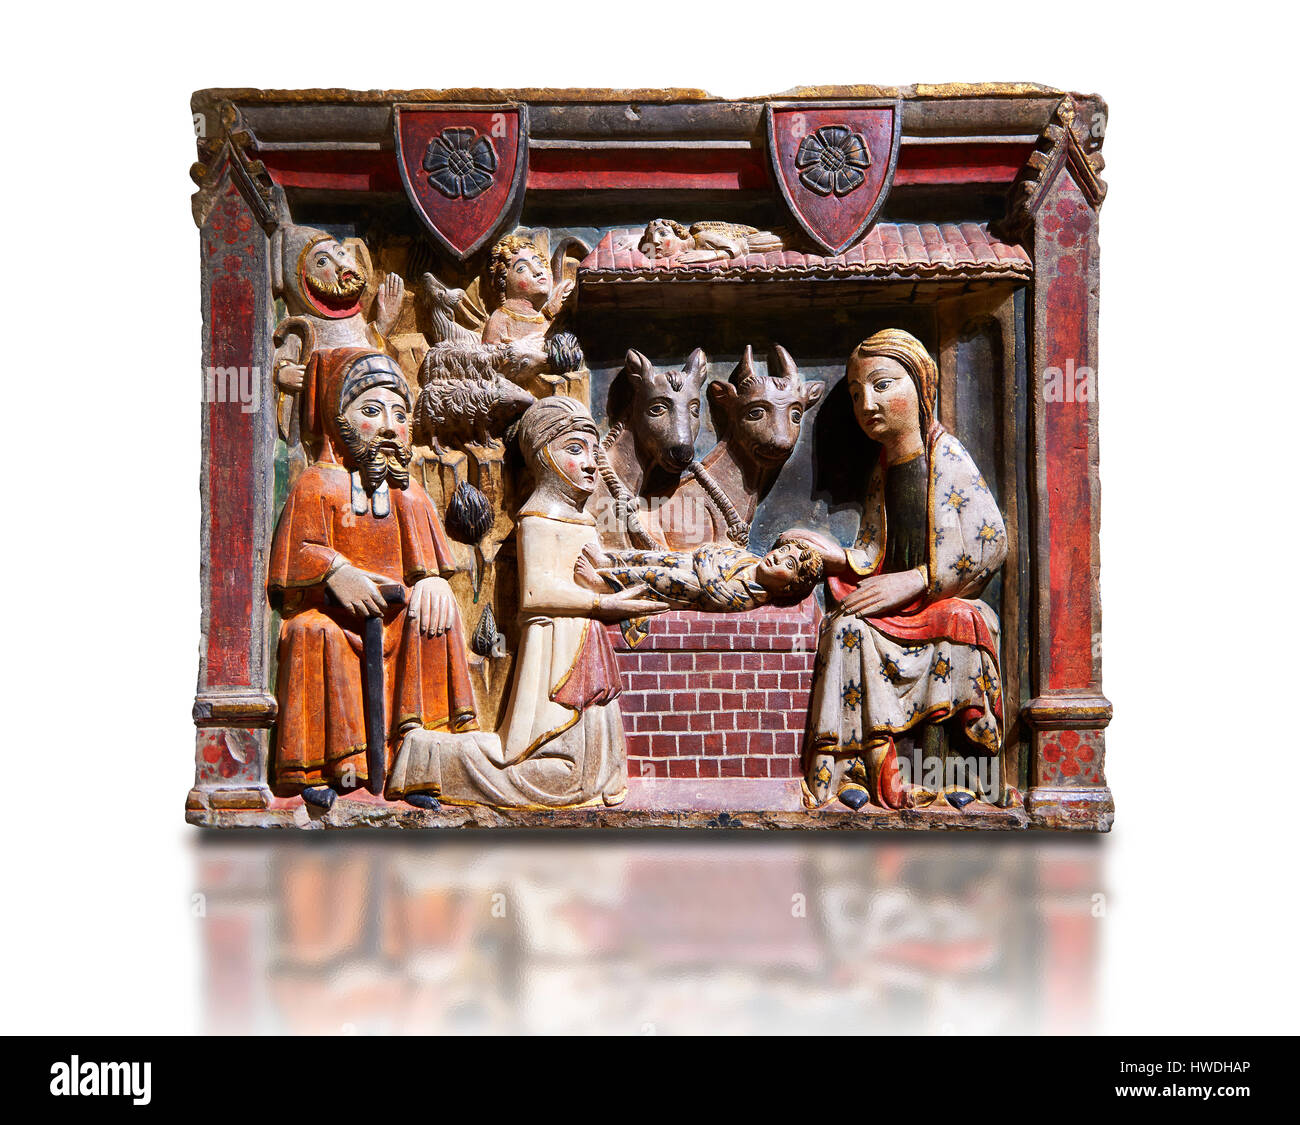 Dipinto gotico bassorilievo della Natività da master di Albesa. Museo Nazionale di Arte Catalana di Barcellona, Spagna, inv n.: 017342-000 Foto Stock